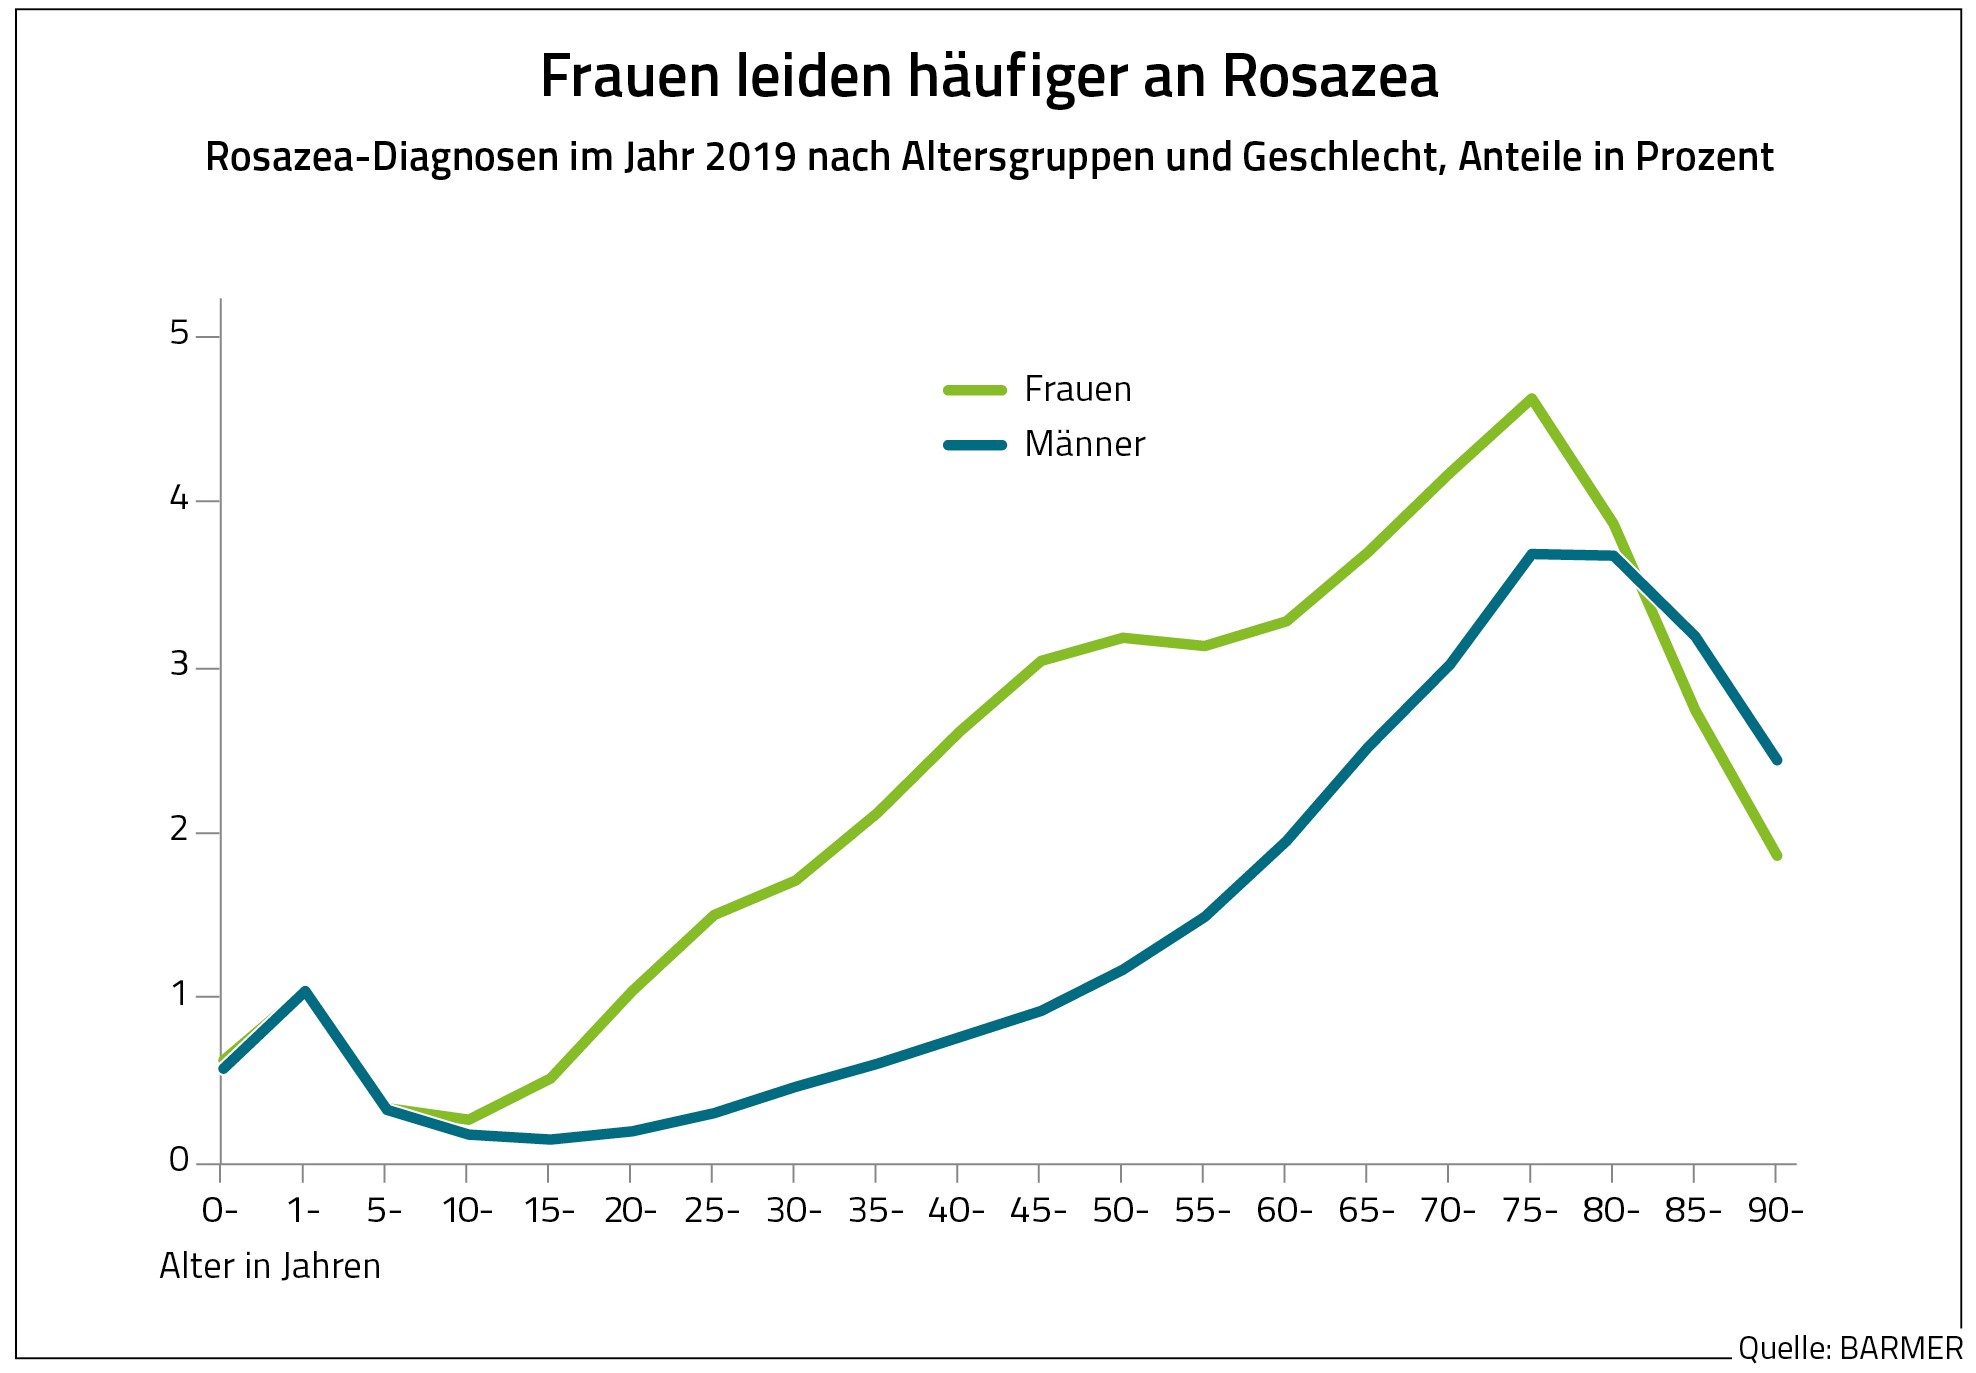 Die Grafik zeigt die Rosazea-Diagnosen von Frauen und Männern im Jahr 2019 nach Alter.